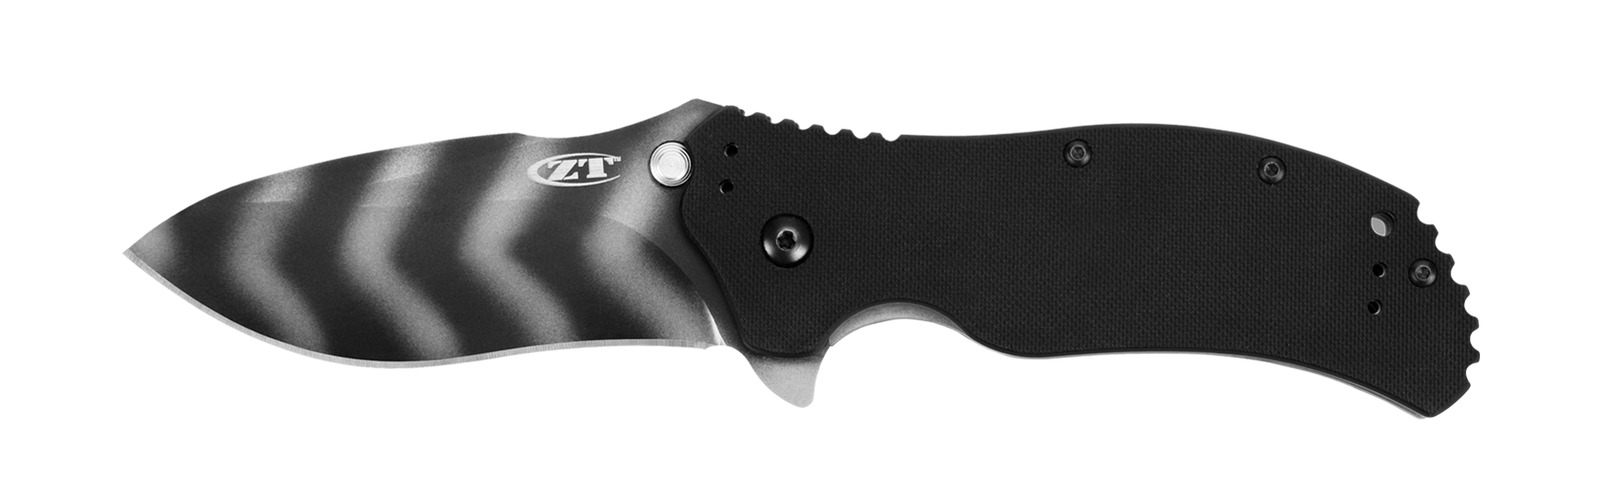 Zero Tolerance Knives 0350TS Black G-10 S30V Stainless 350TS Ken Onion Knife